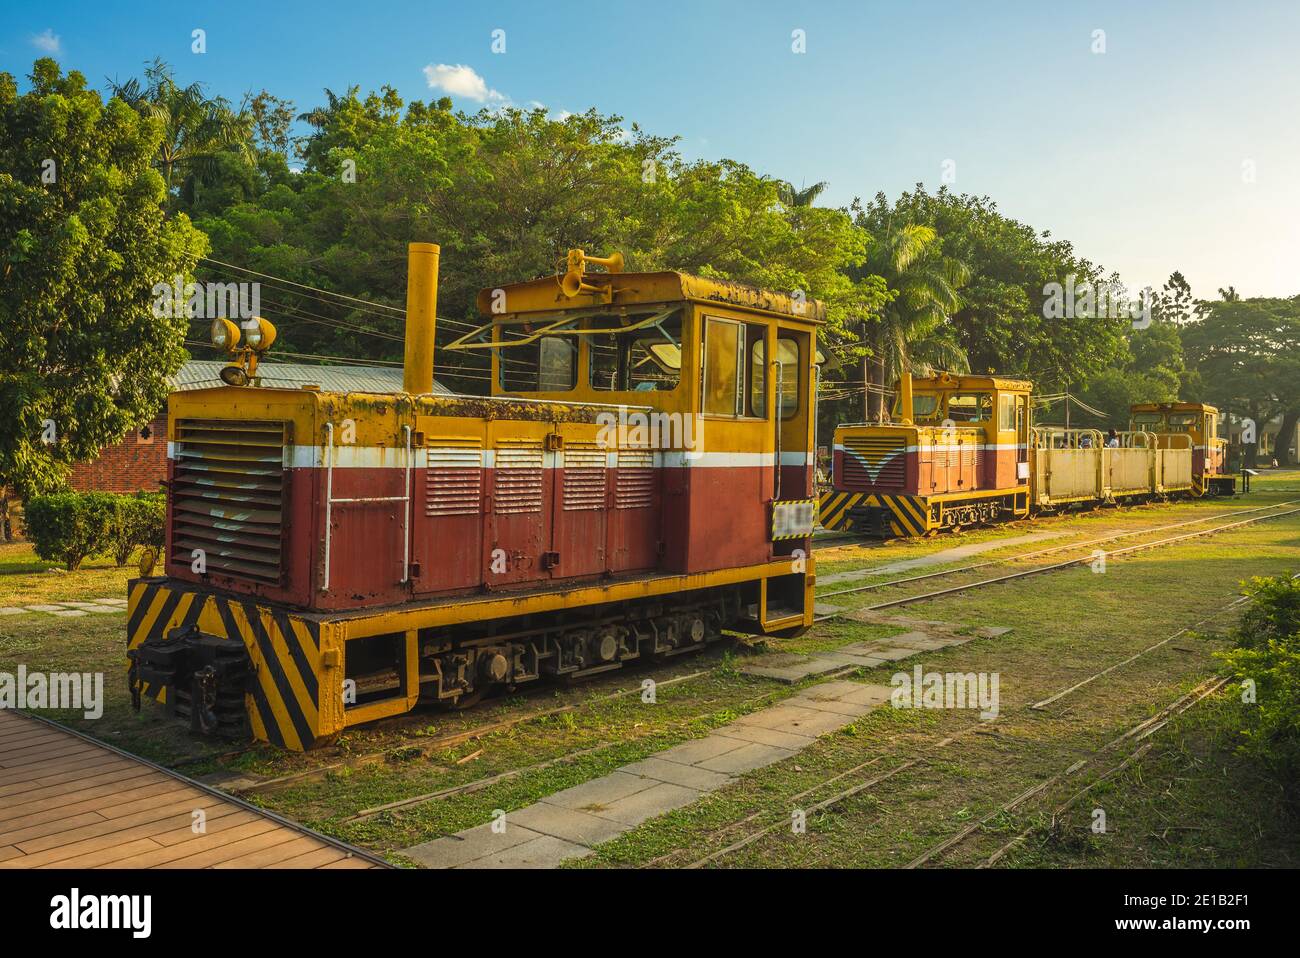 Alte Eisenbahn und Züge in der Zuckerfabrik Ciaotou, alias taiwan Zucker Museum, in kaohsiung, taiwan Stockfoto